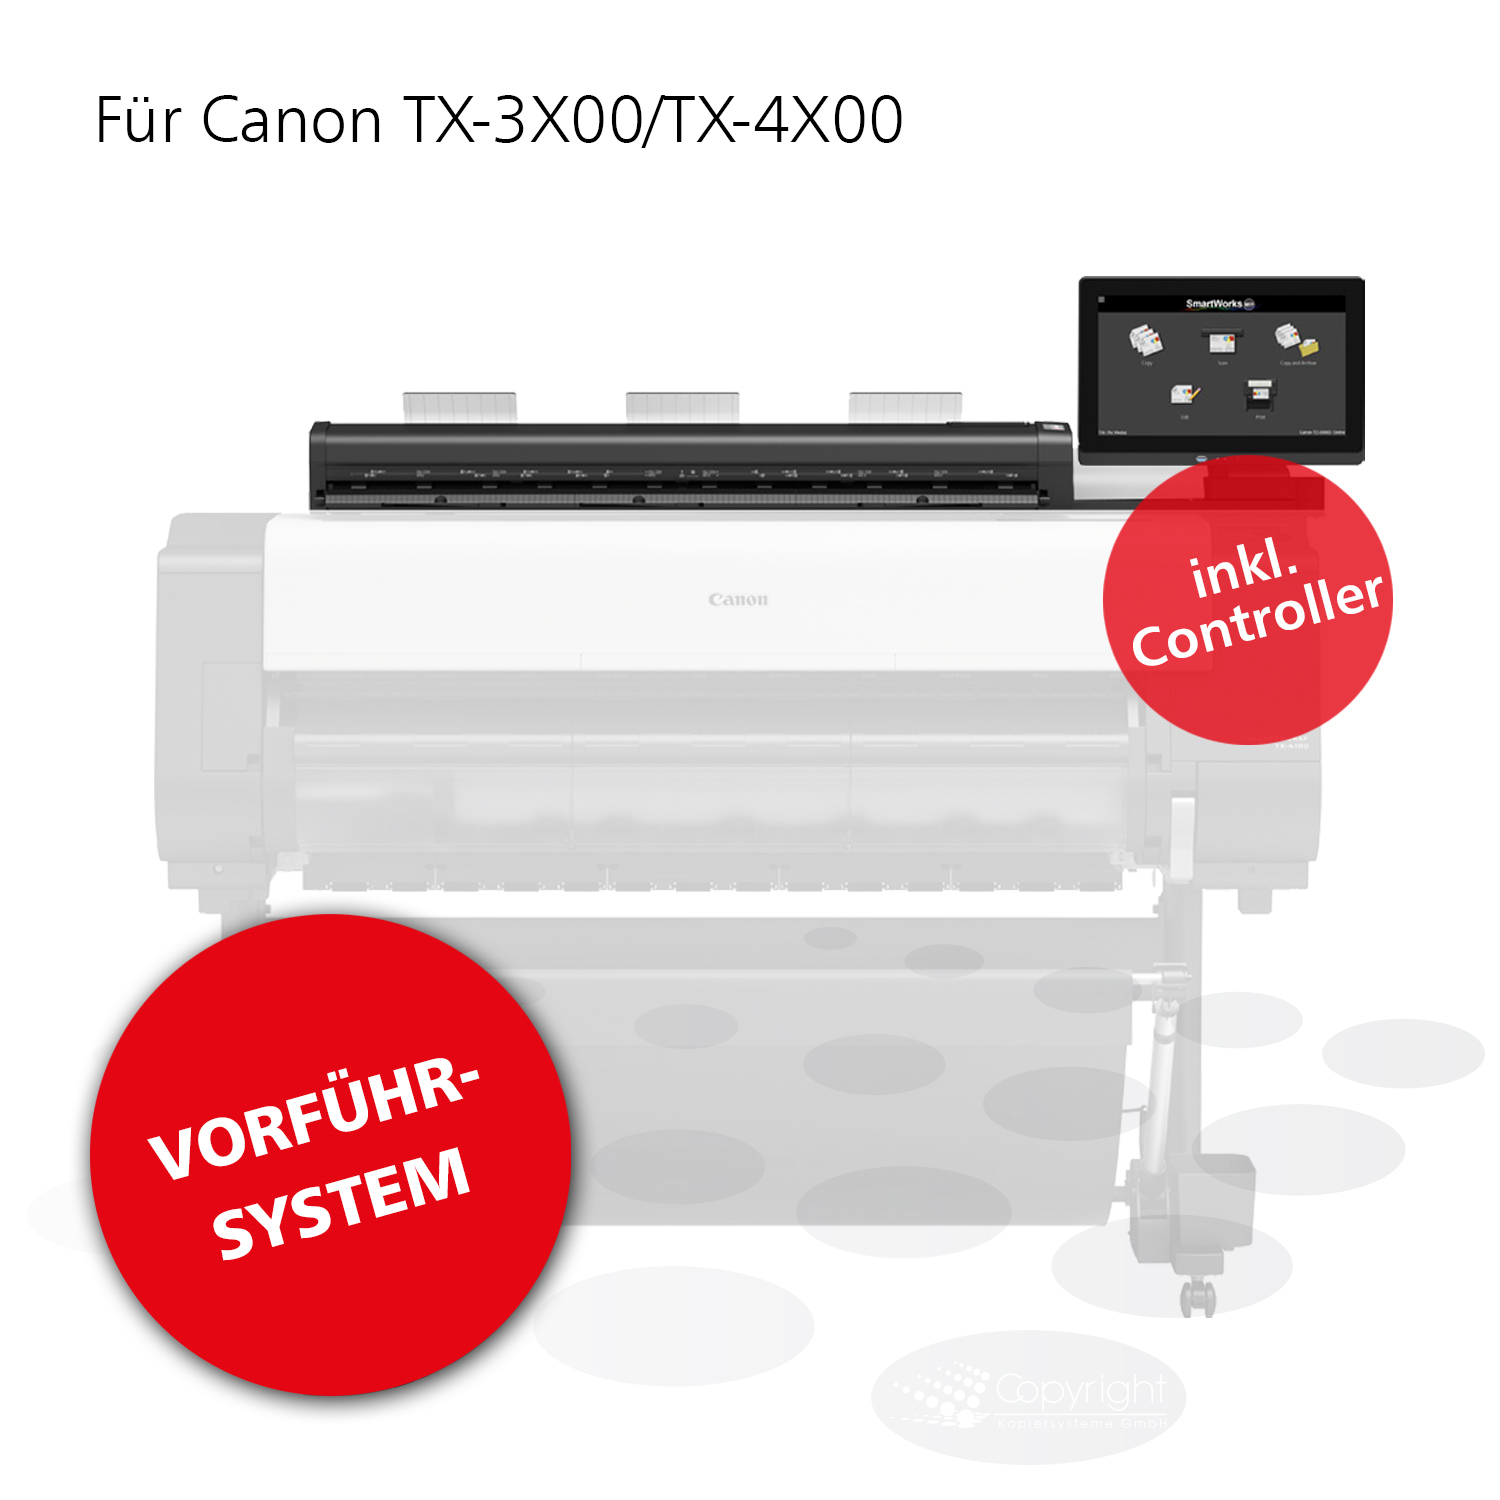 Canon Z36 Scanner inkl. Controller für TX-3X00/TX-4X00 